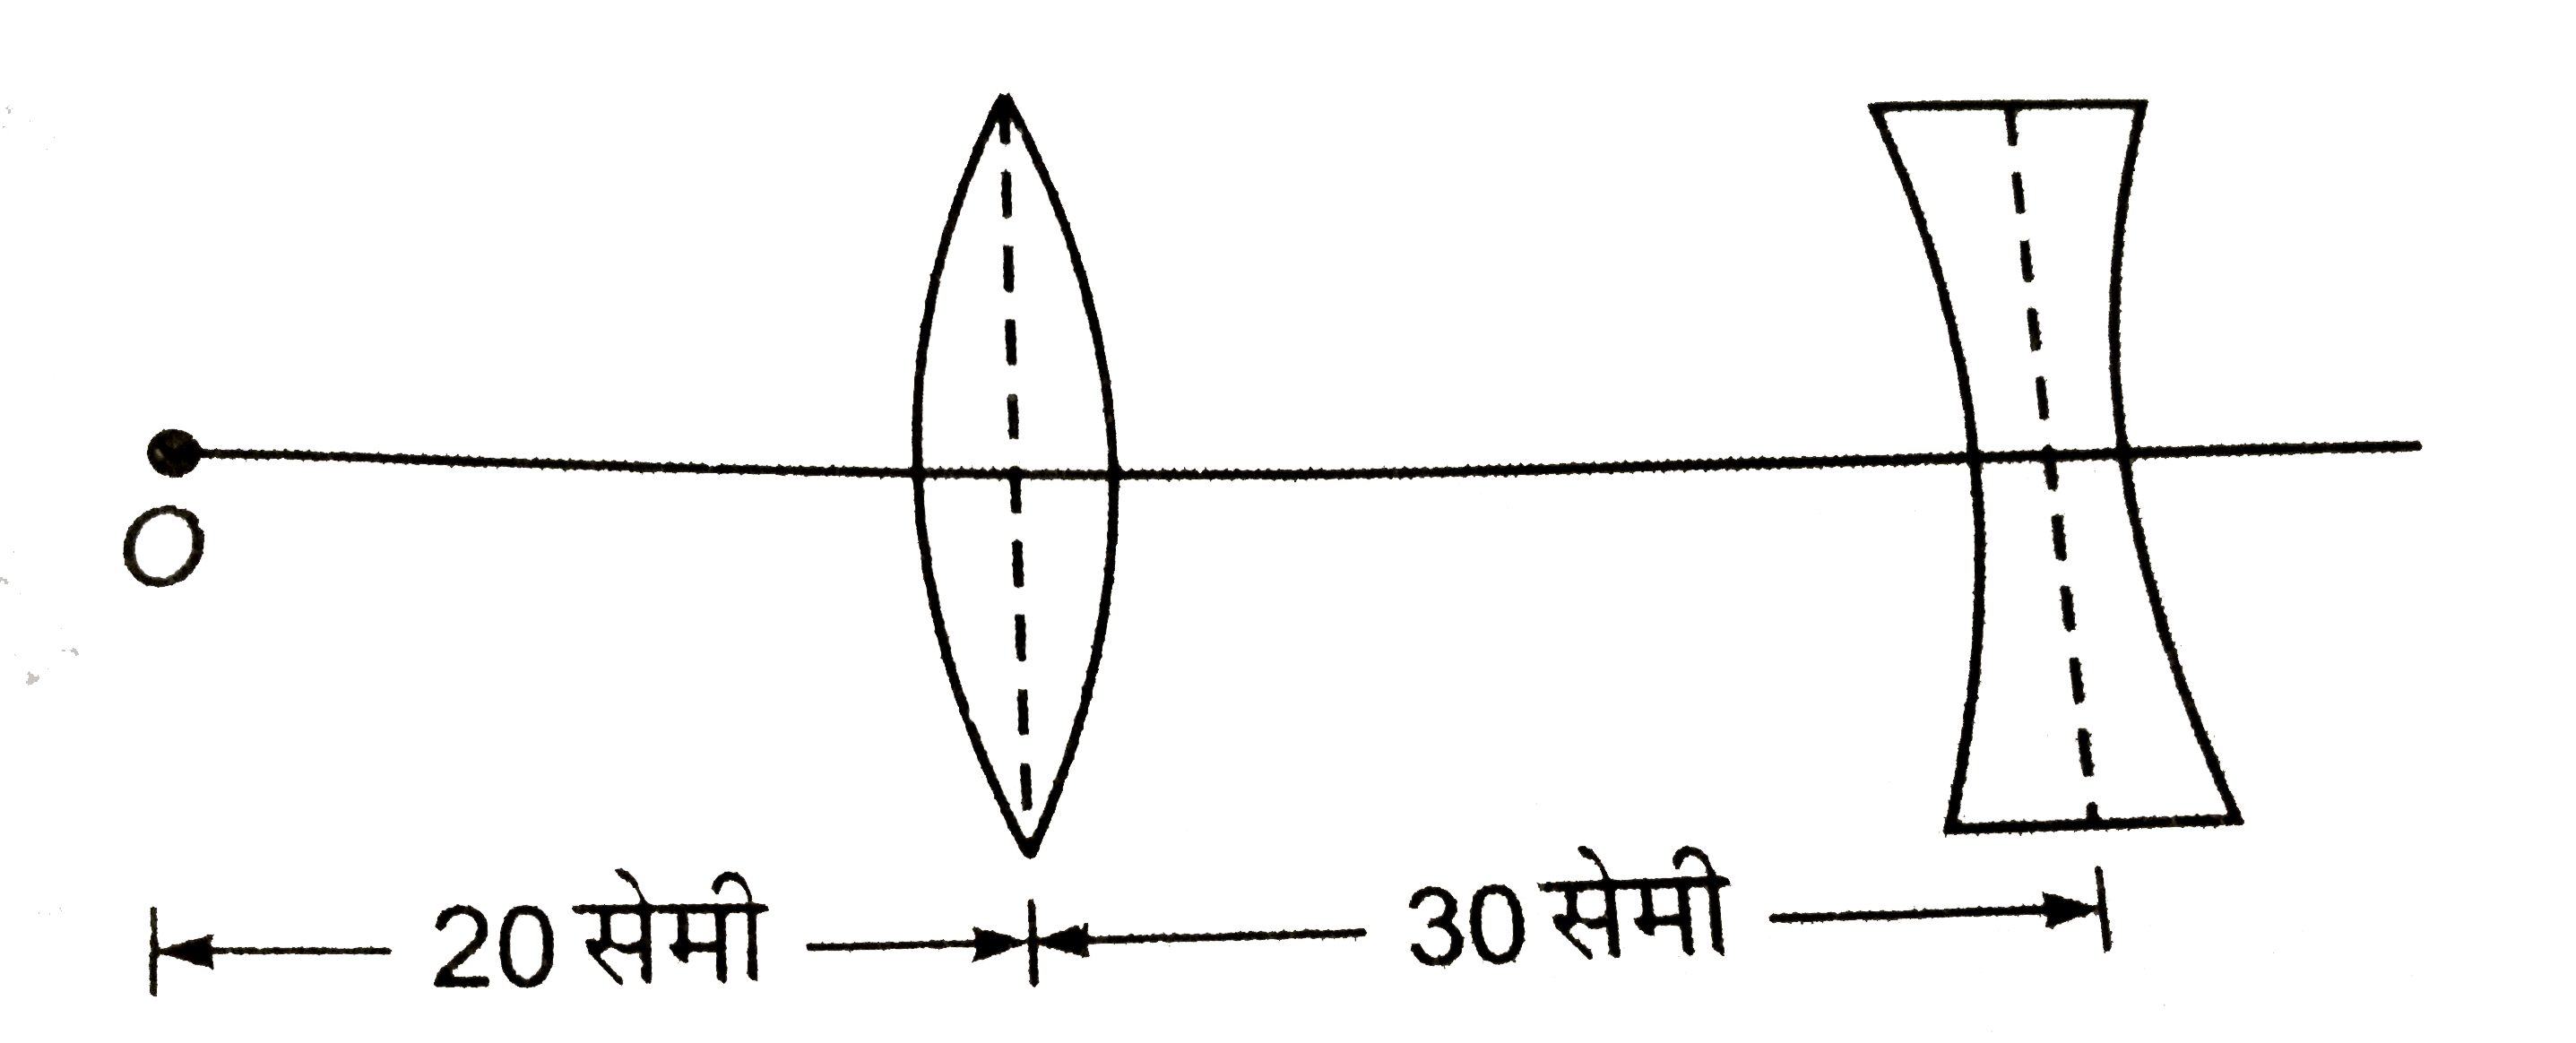 चित्र में, दिखाये गये प्रत्येक लेन्स कि फ़ोकस दूरी 10 सेमी है। बिन्दु-वस्तु O  के प्रतिबिम्ब की उत्तल लेन्स से दूरी कीजिए। किरण-आरेख भी खीचिए।